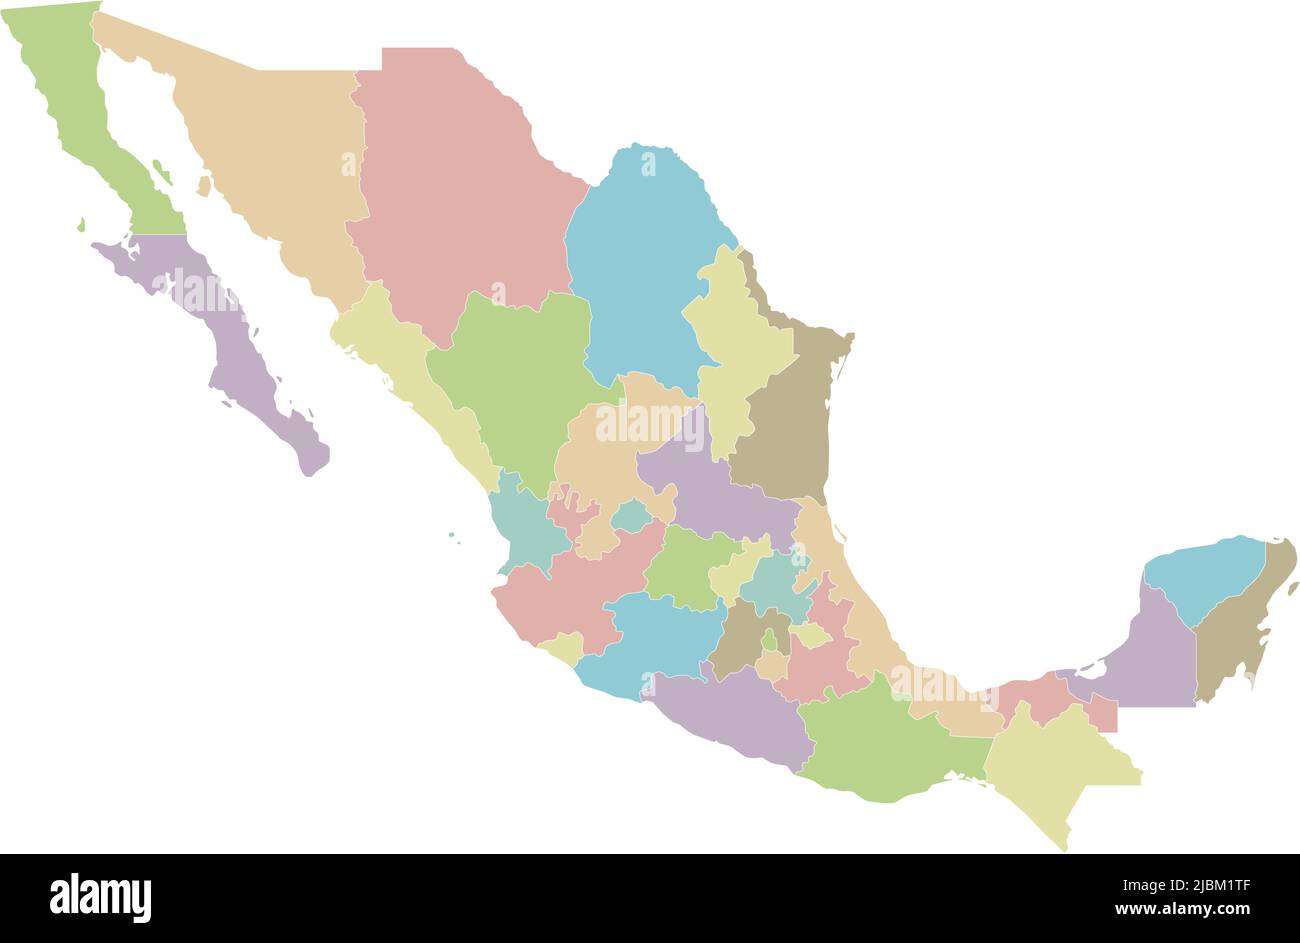 Mappa vettoriale vuota del Messico con regioni o stati e divisioni amministrative. Livelli modificabili e chiaramente etichettati. Illustrazione Vettoriale